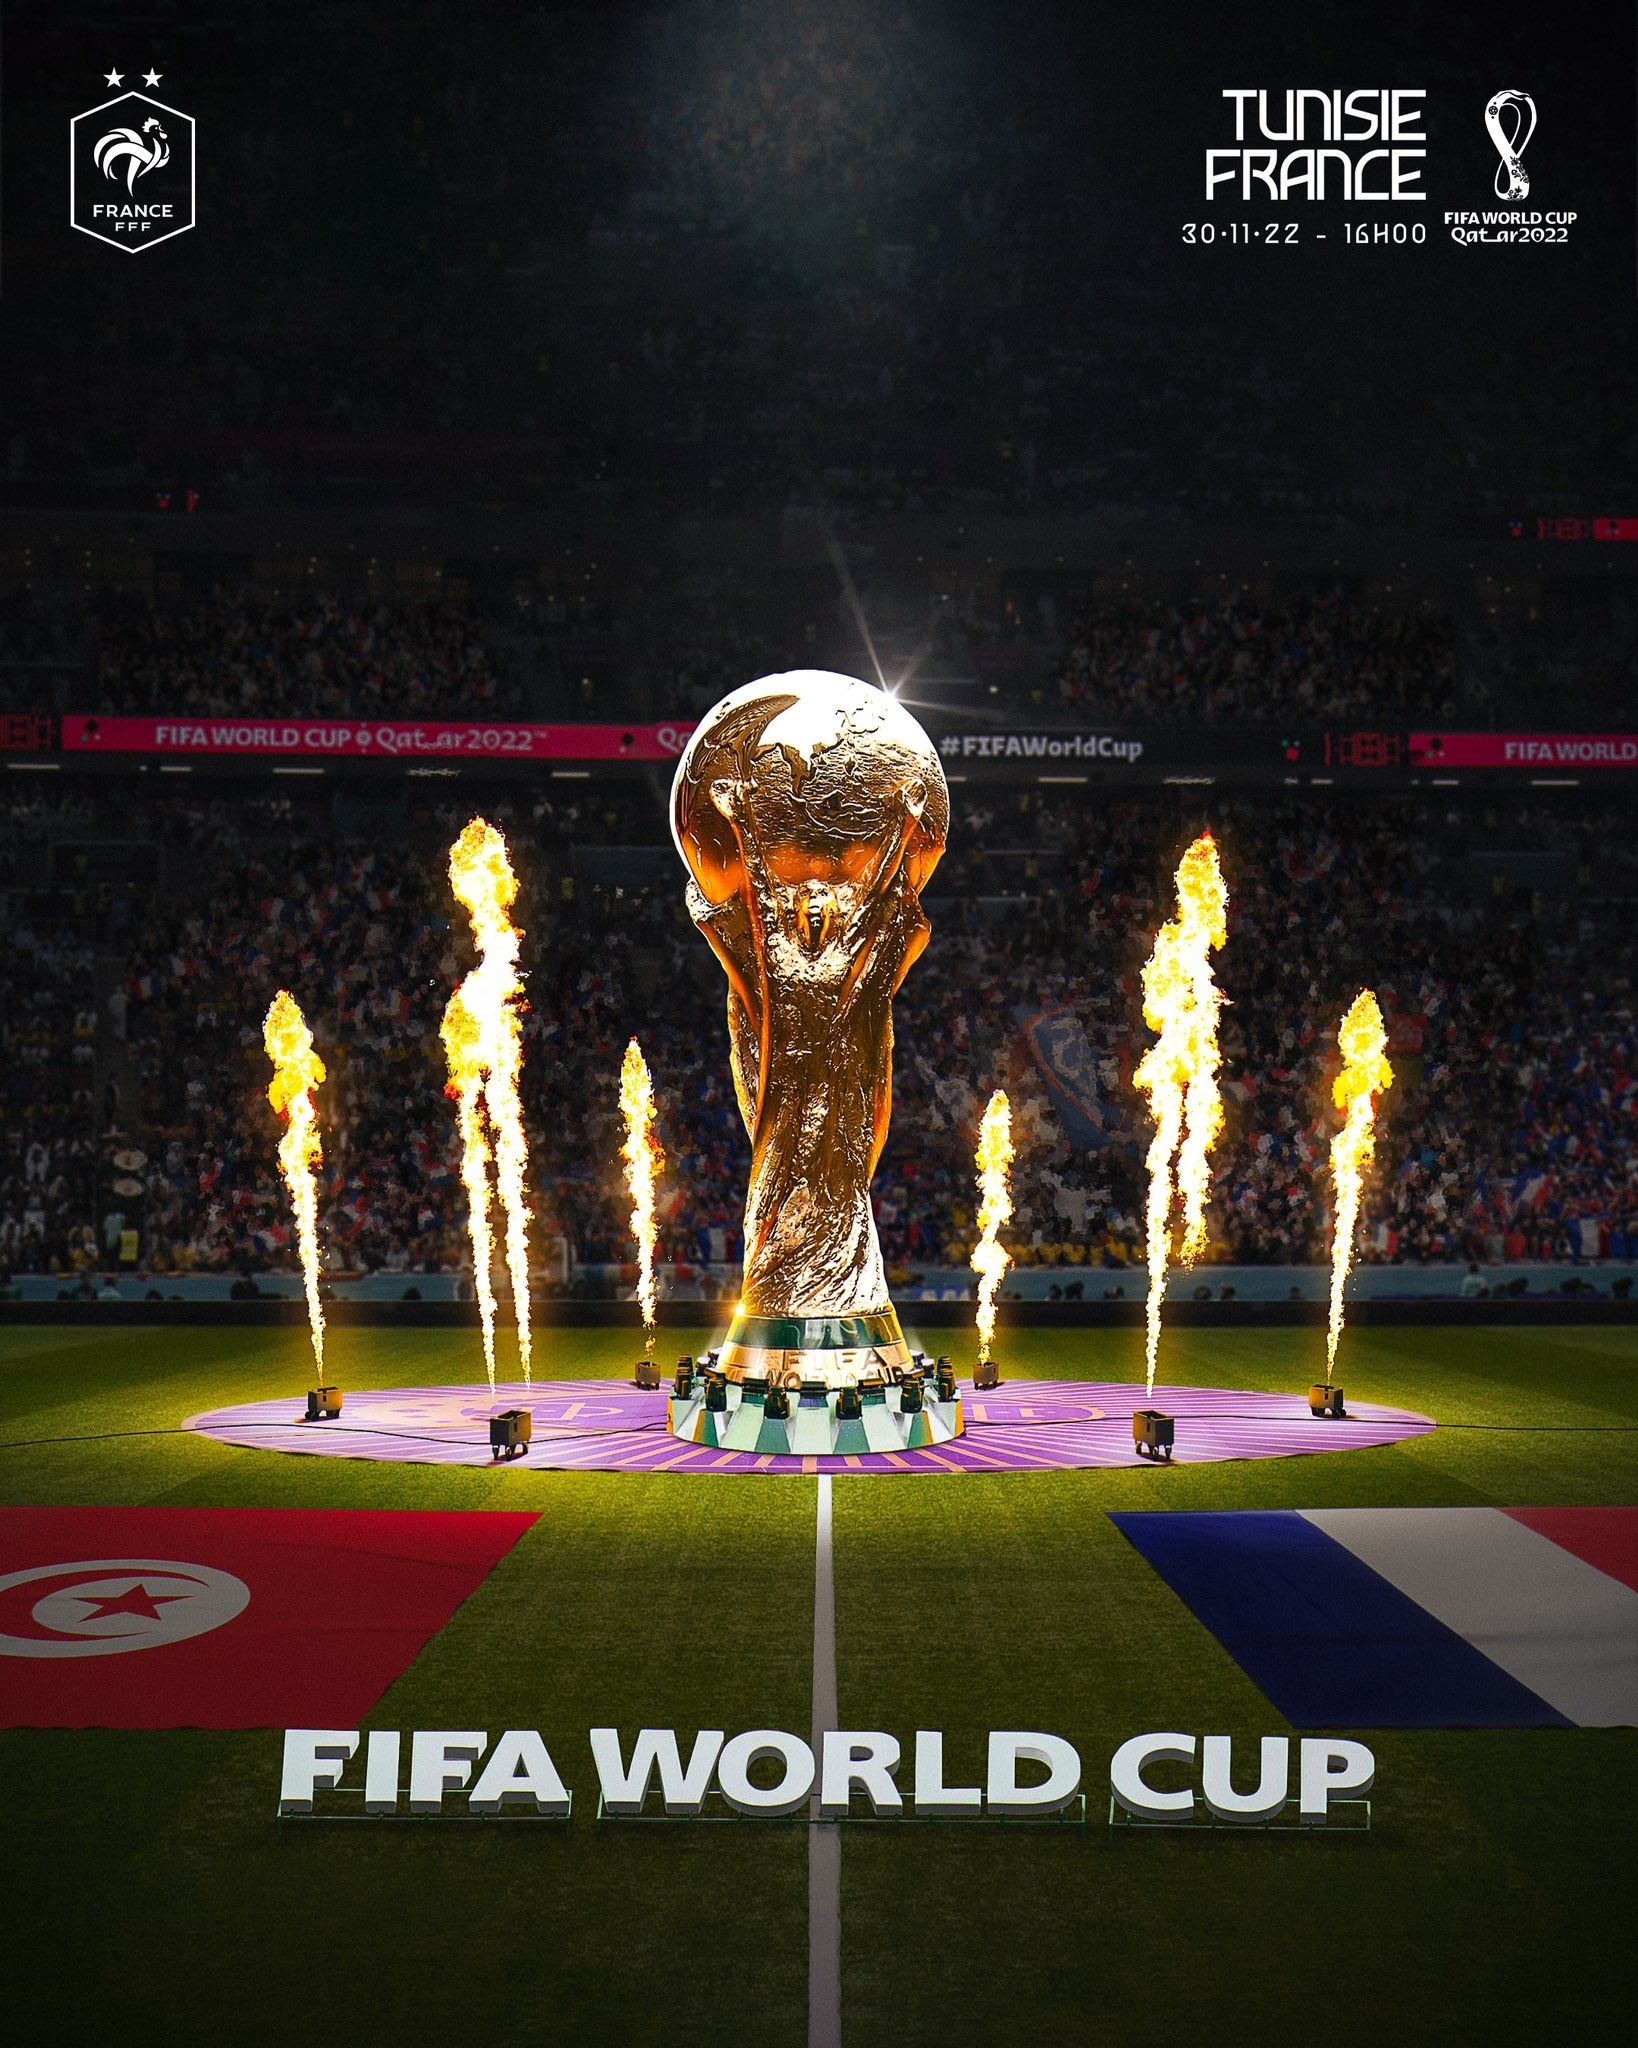 法国队发布对突尼斯海报:大力神杯矗立在球场中央